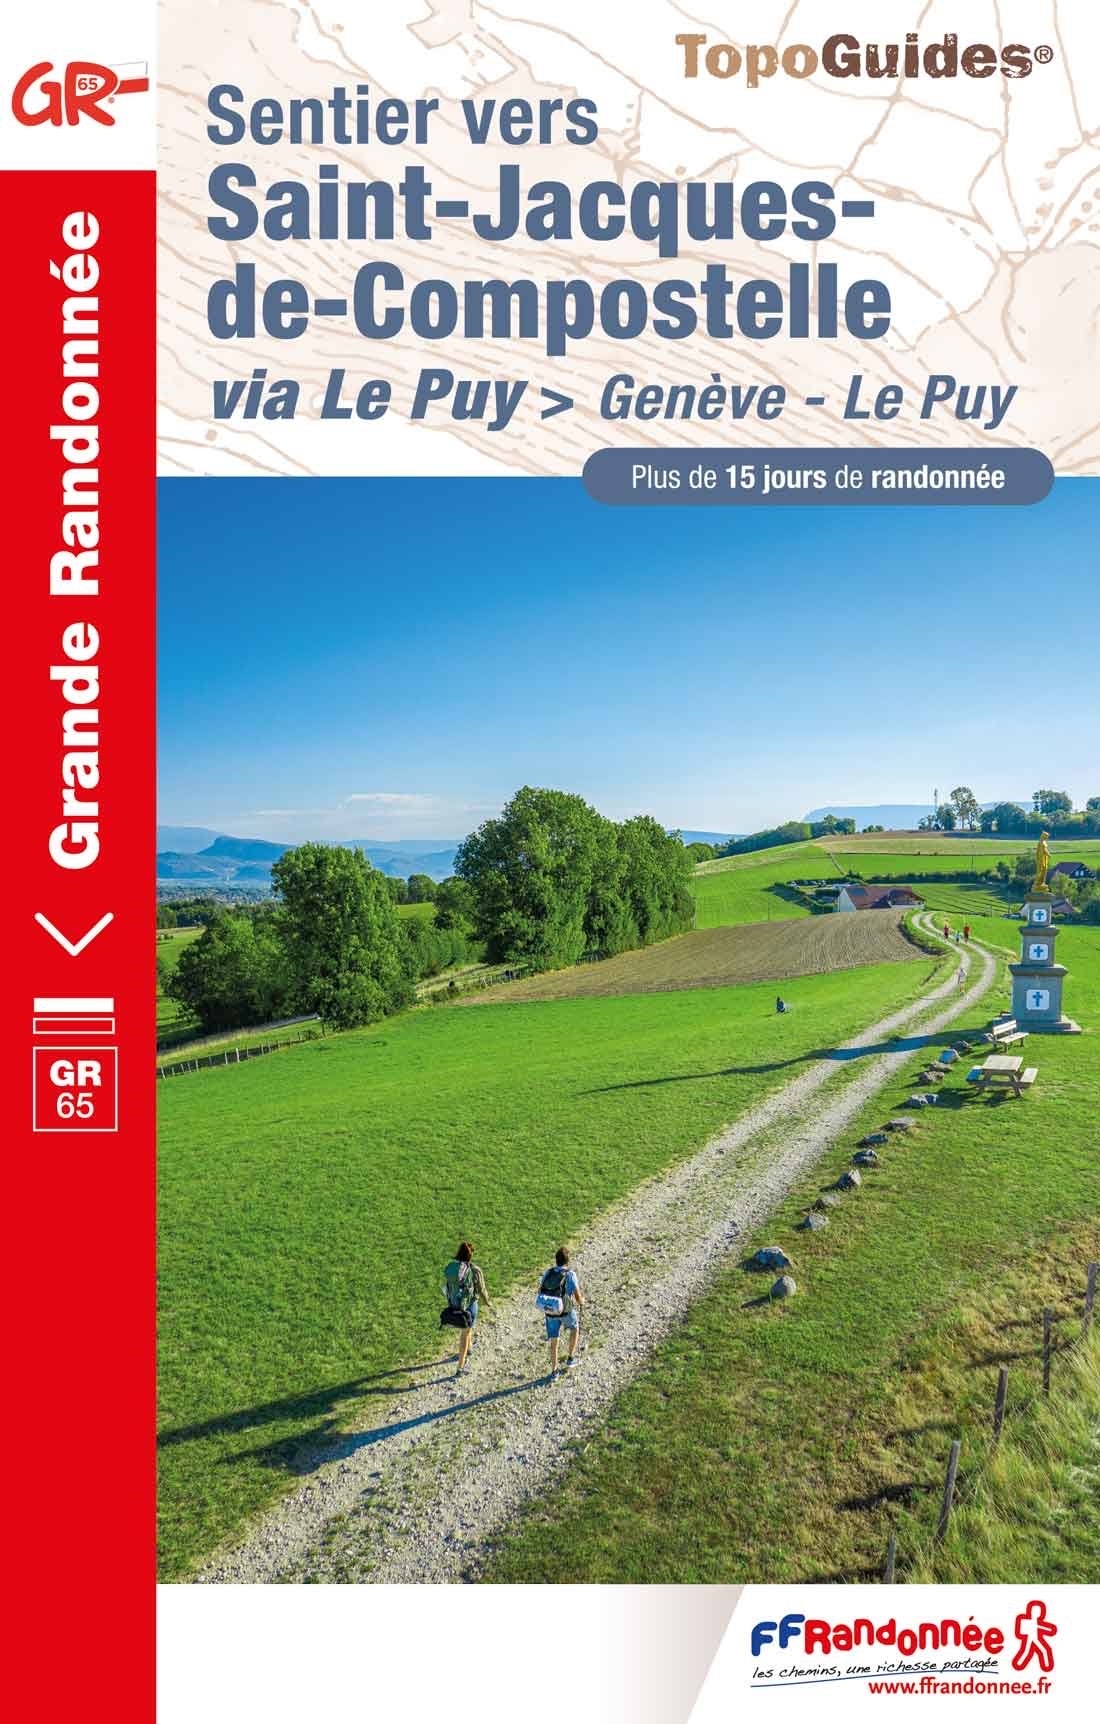 Online bestellen: Wandelgids - Pelgrimsroute 650 Sentier vers Saint-Jacques-de-Compostelle GR65 | FFRP